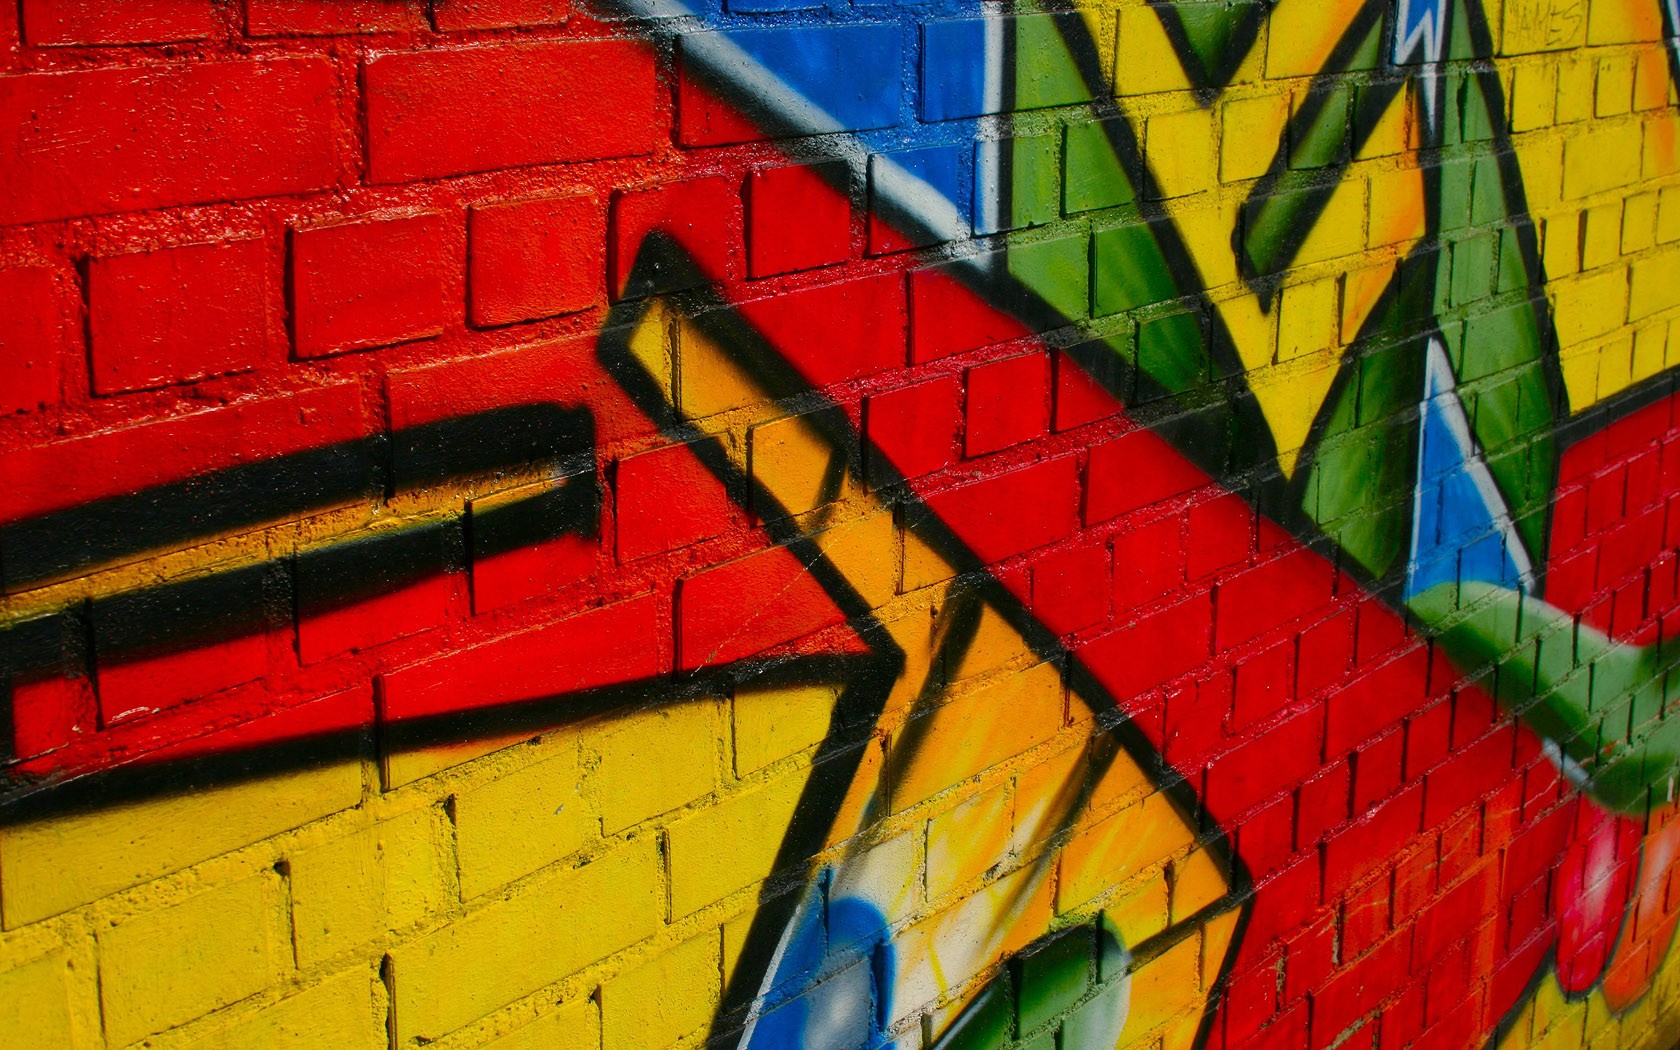 General 1680x1050 graffiti wall urban